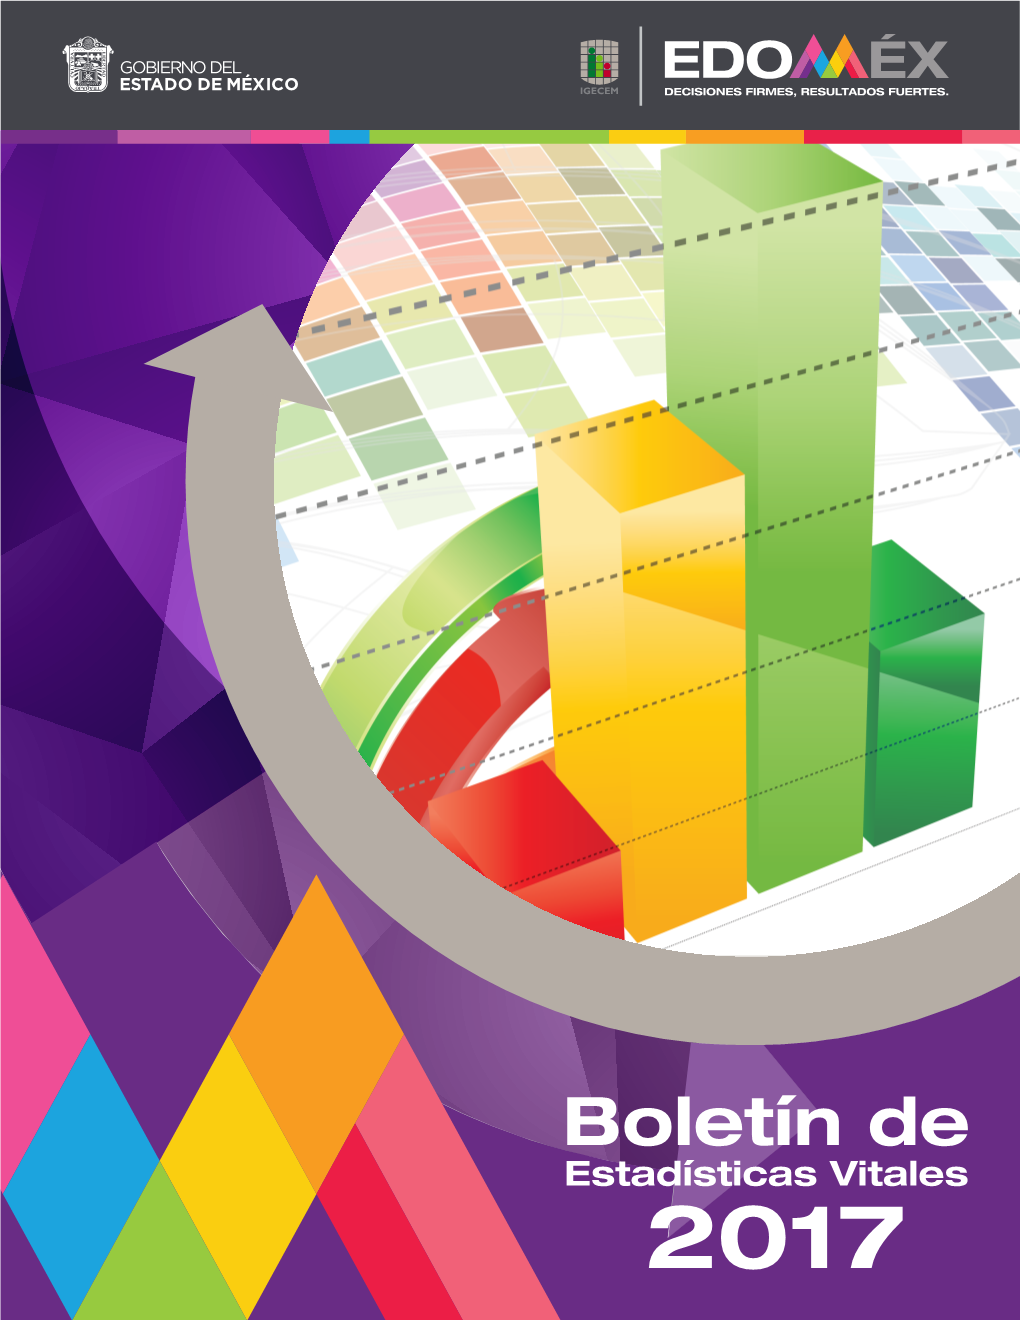 Boletín De Estadísticas Vitales 2017 Boletín De Estadísticas Vitales 2017 Boletín De Estadísticas Vitales DR